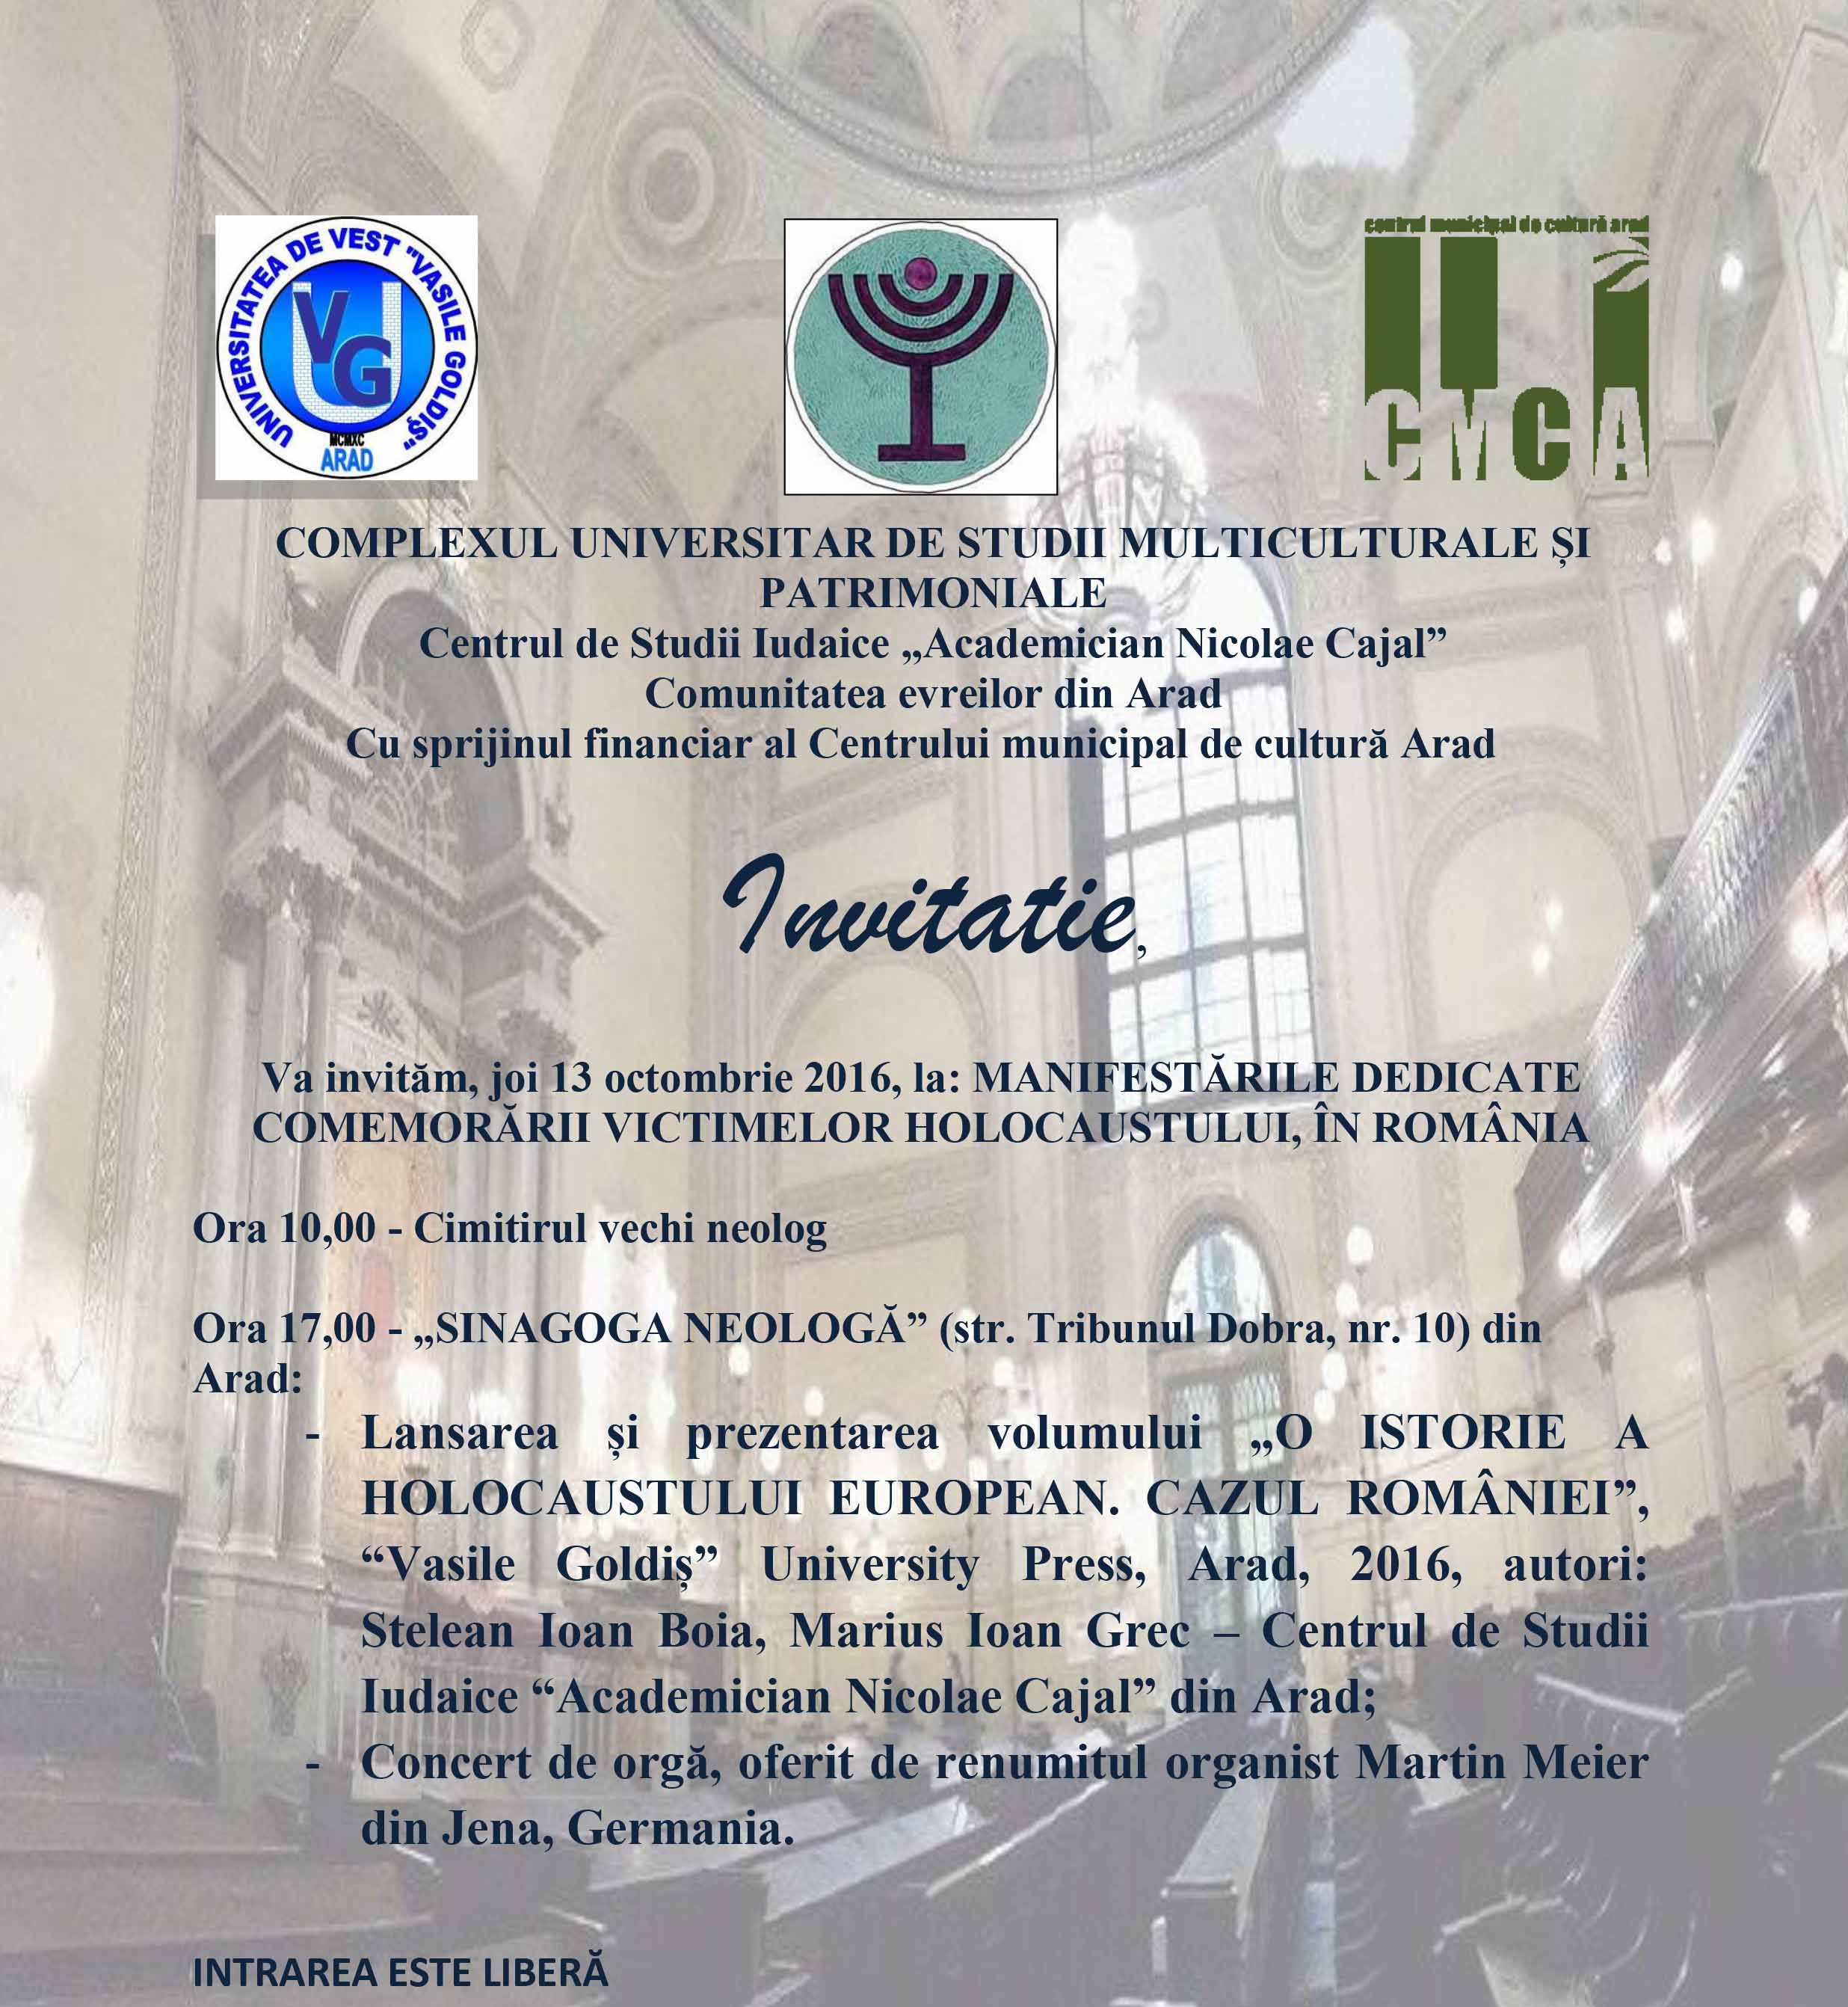 invitatie_comemorare-holocaust_sinagoga-neologa-1